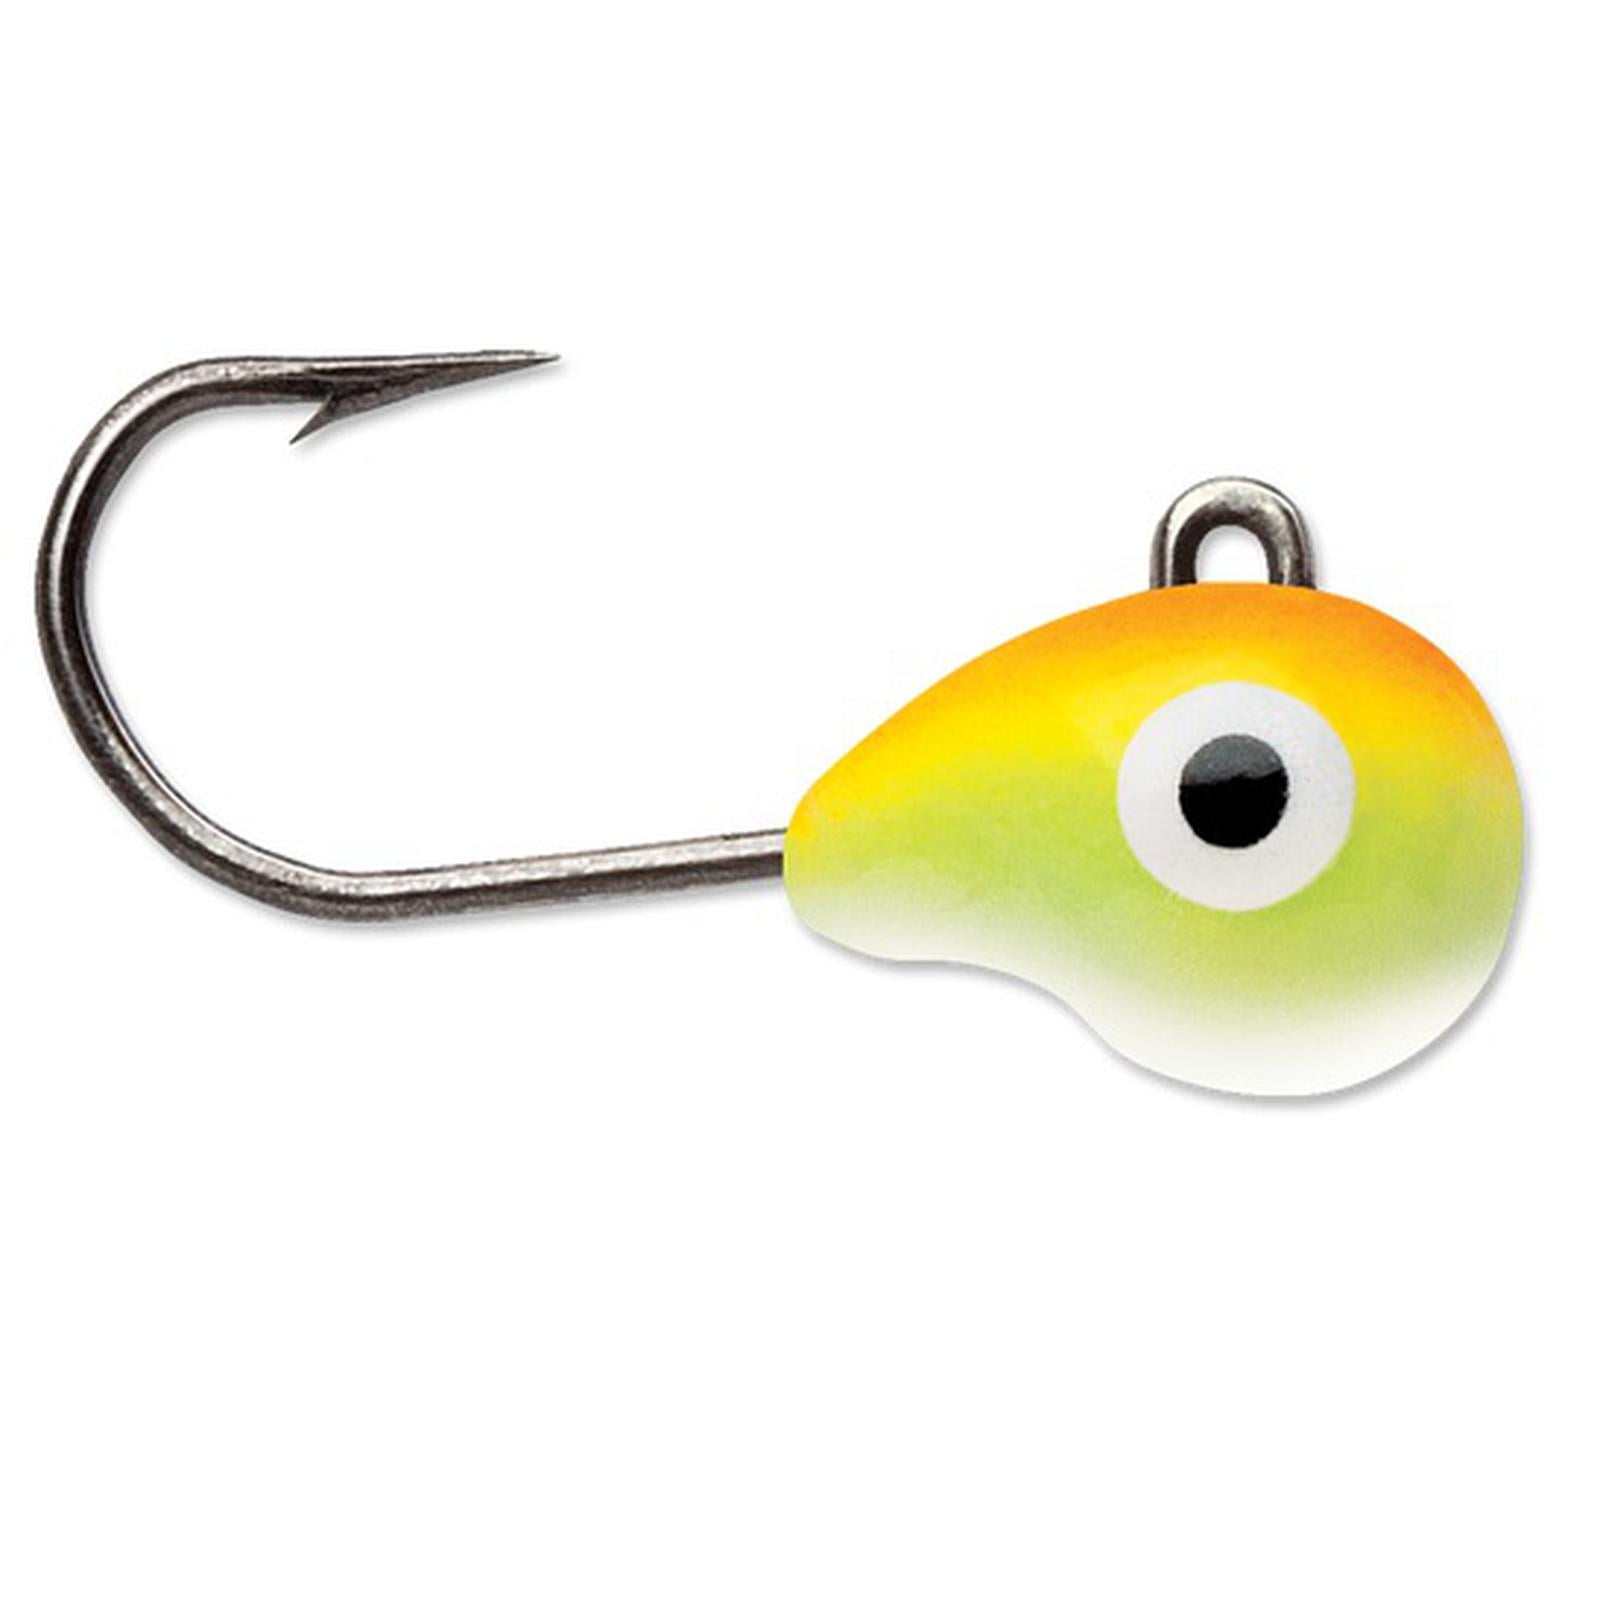 Orange 25 Free Swing Walleye Jig Heads 1/8oz Live Bait Hook Offset Wide Gap